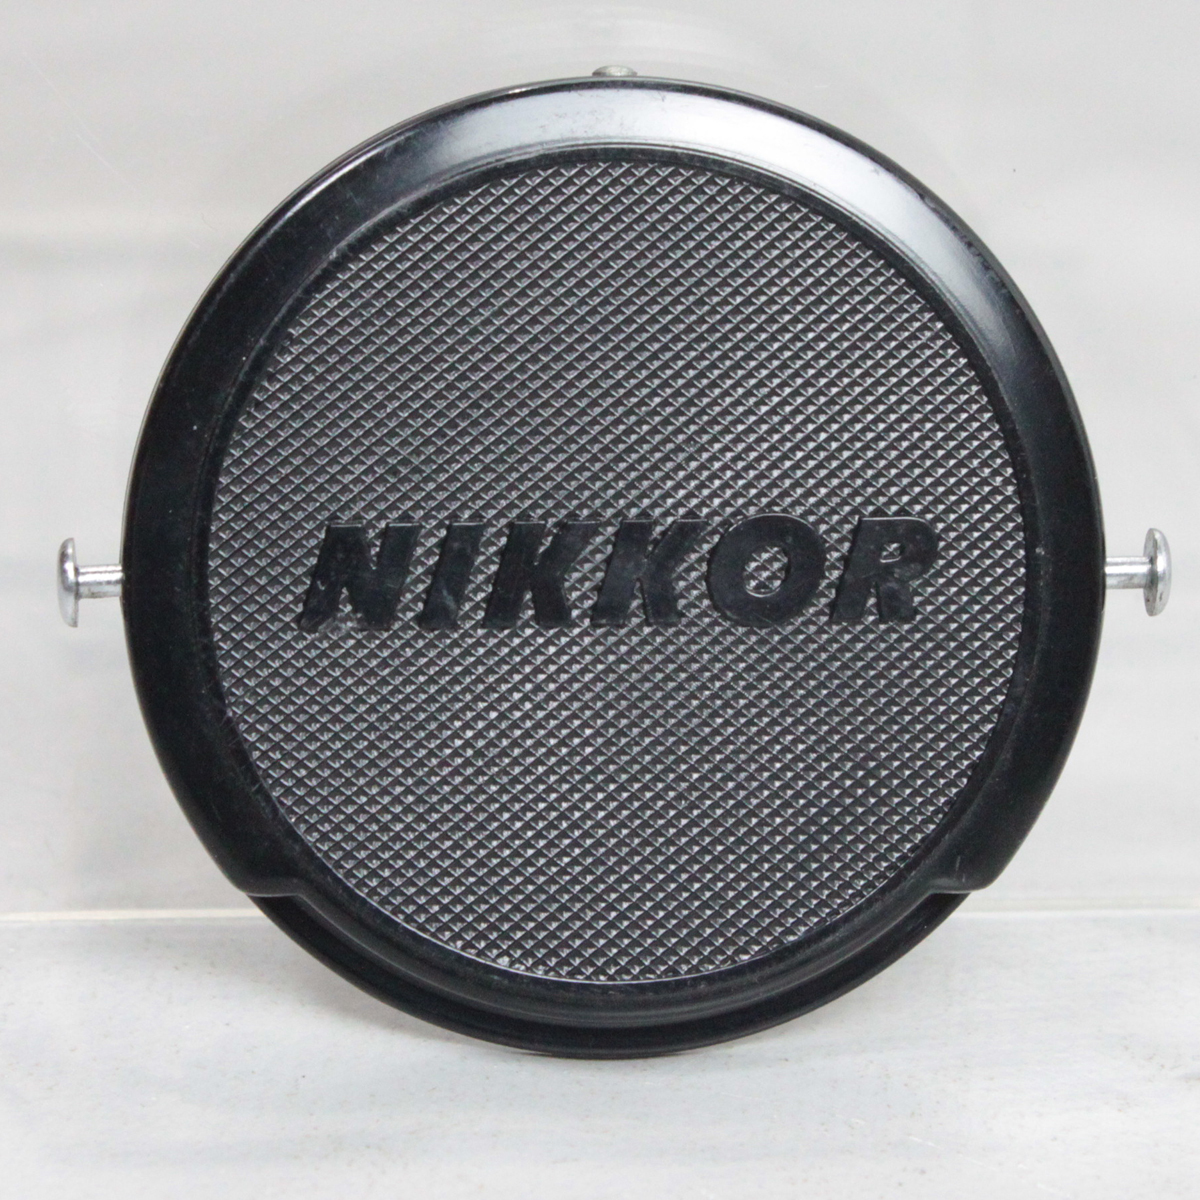 032896 【良品 ニコン】 Nikon NIKKOR 52mm ピンタイプレンズキャップ 